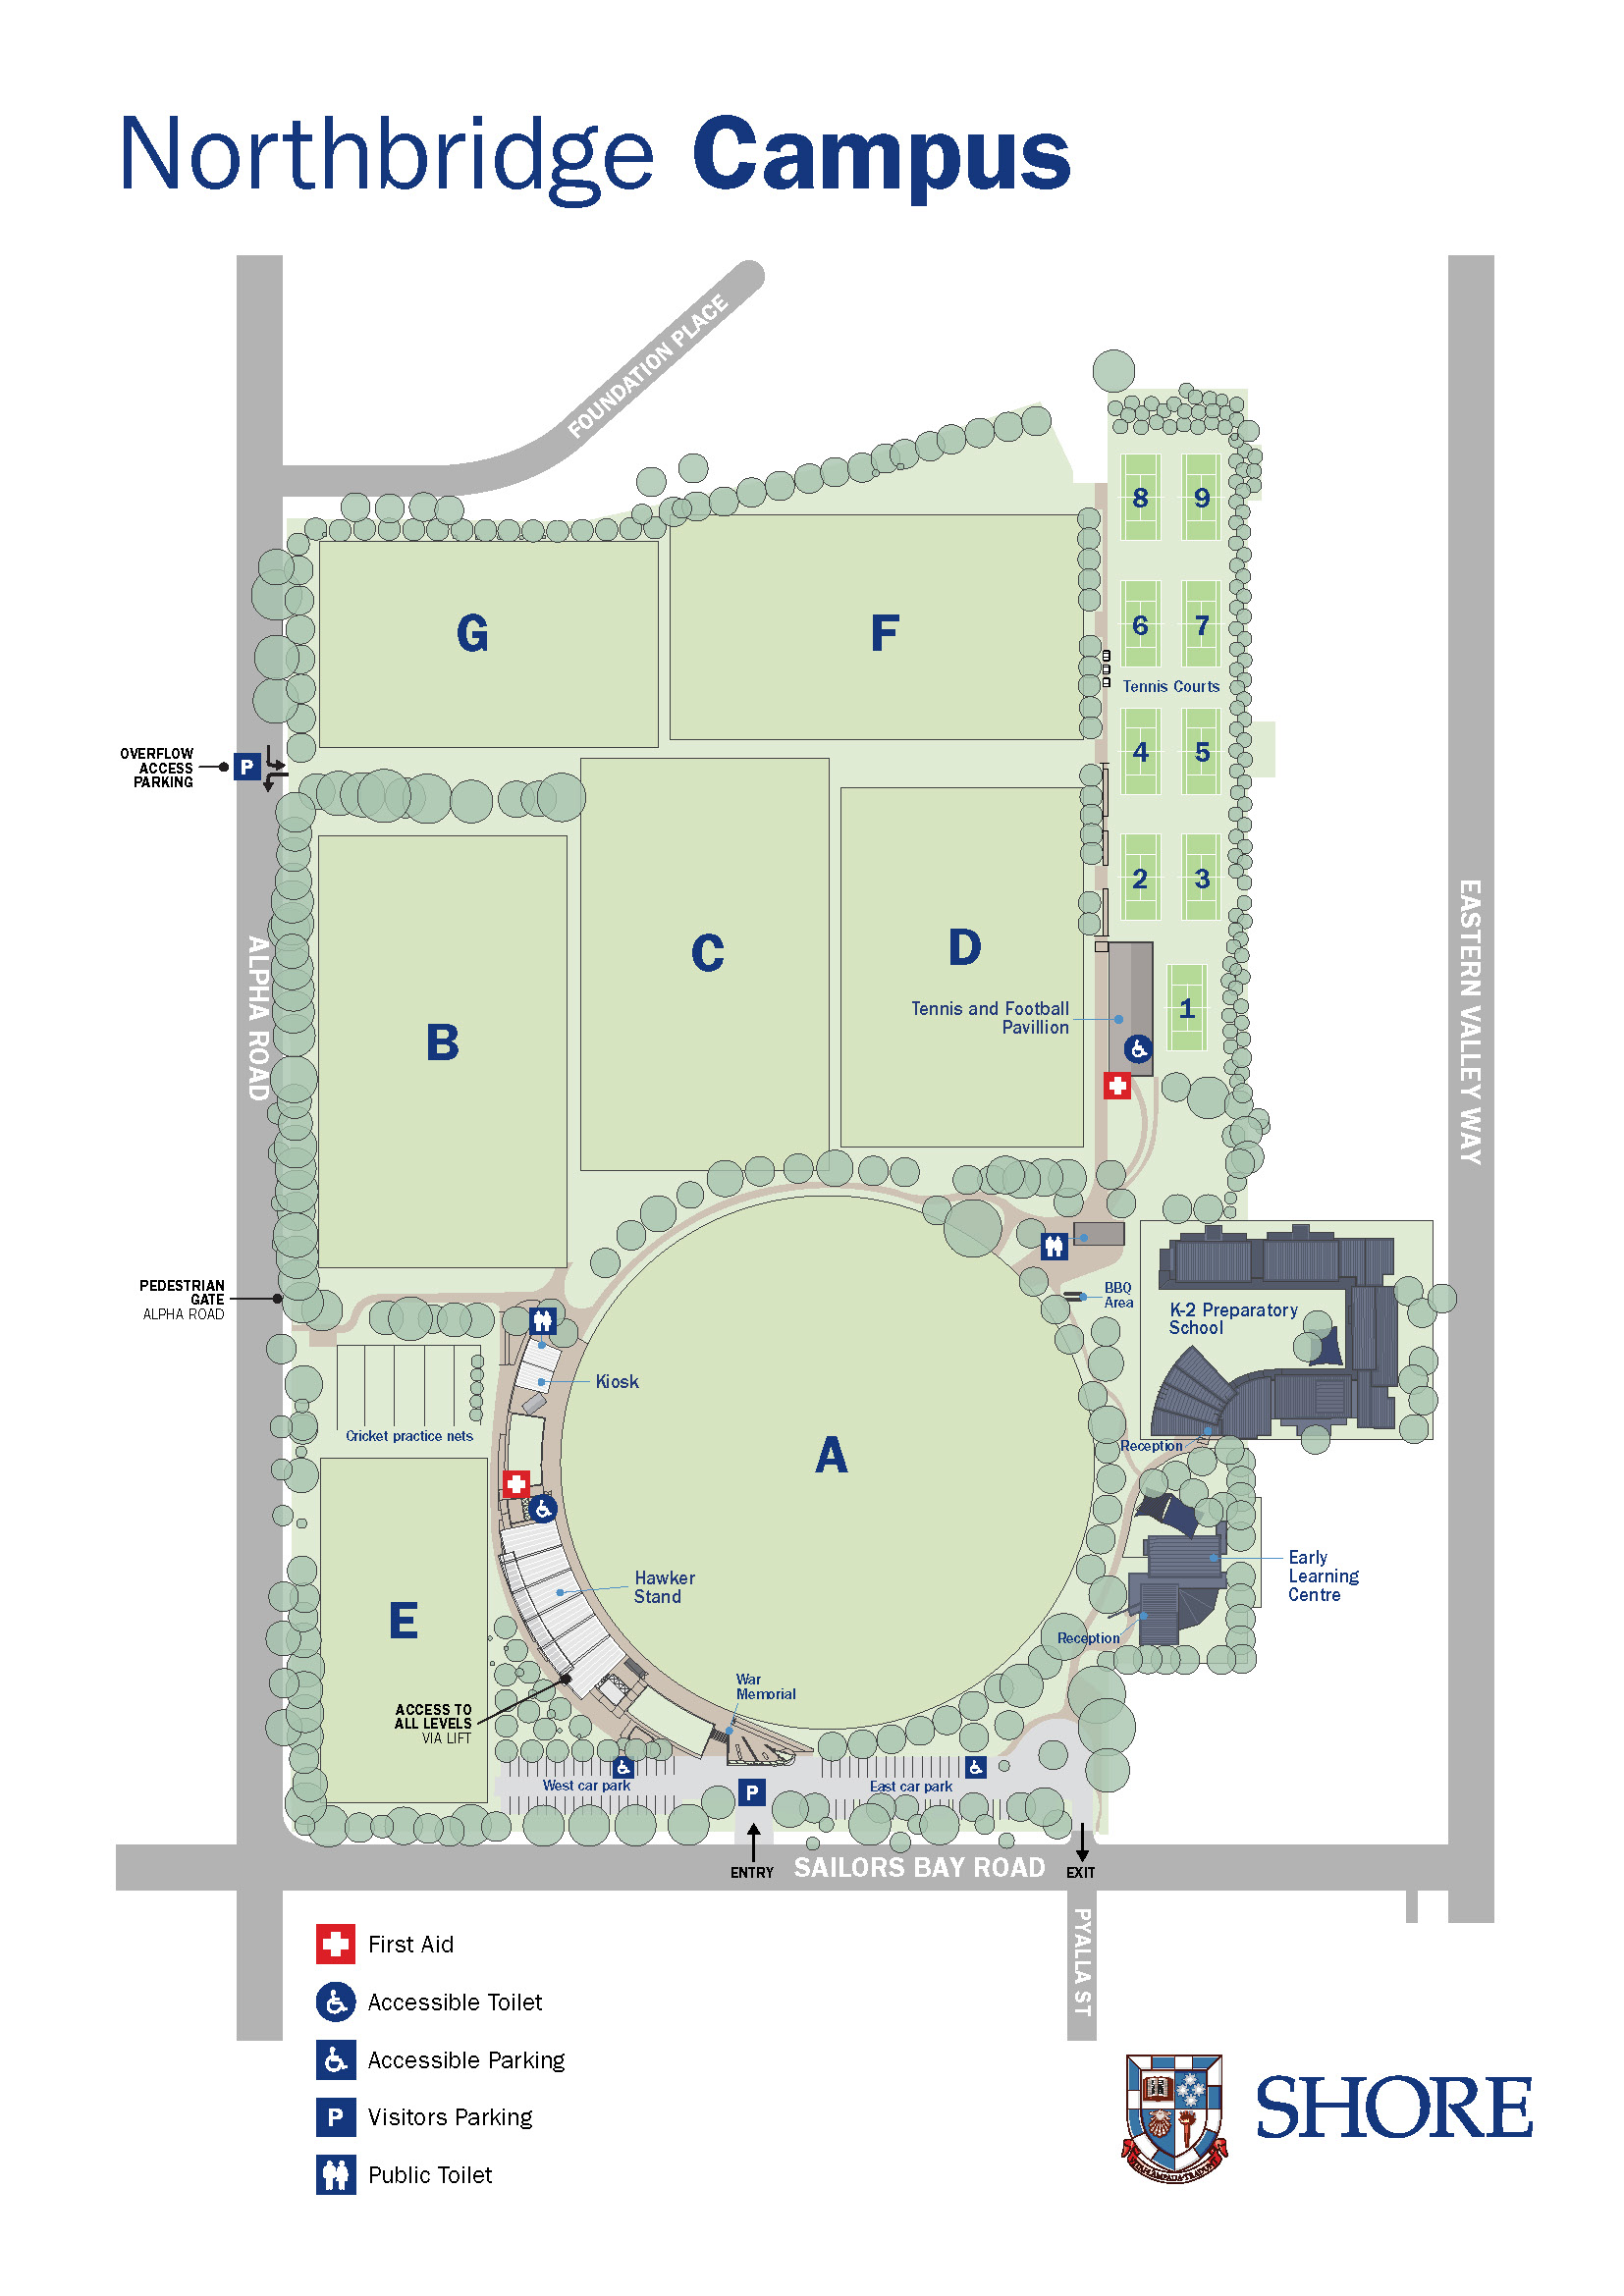 Northbridge Campus map image